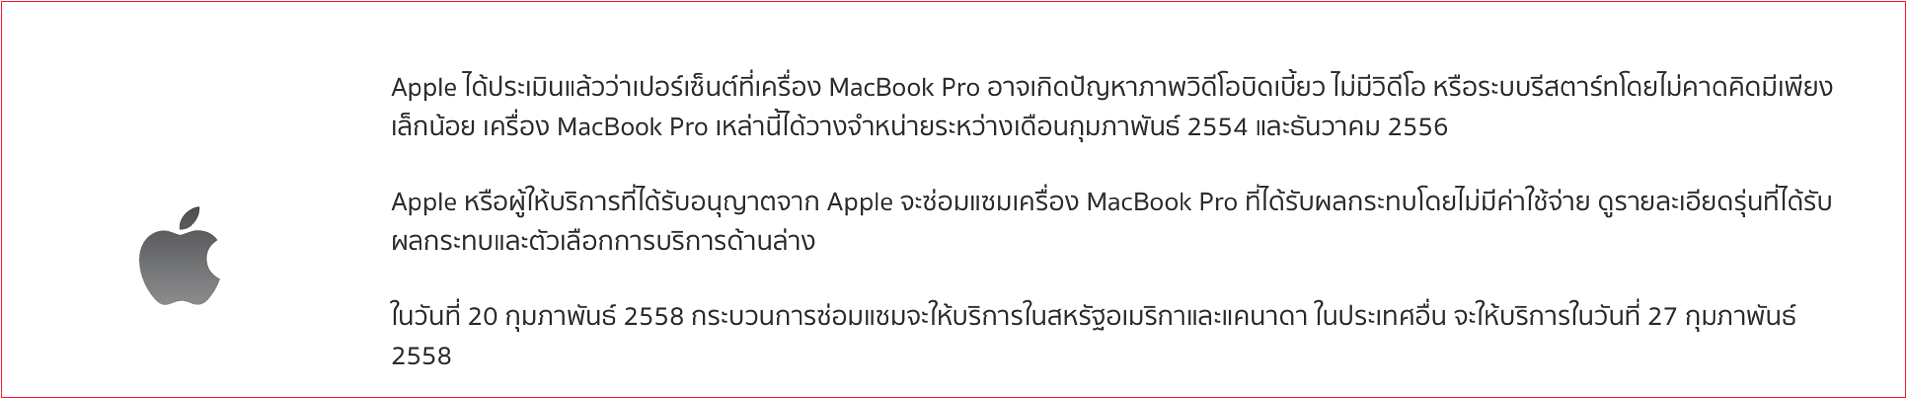 MacBook Pro - graphics